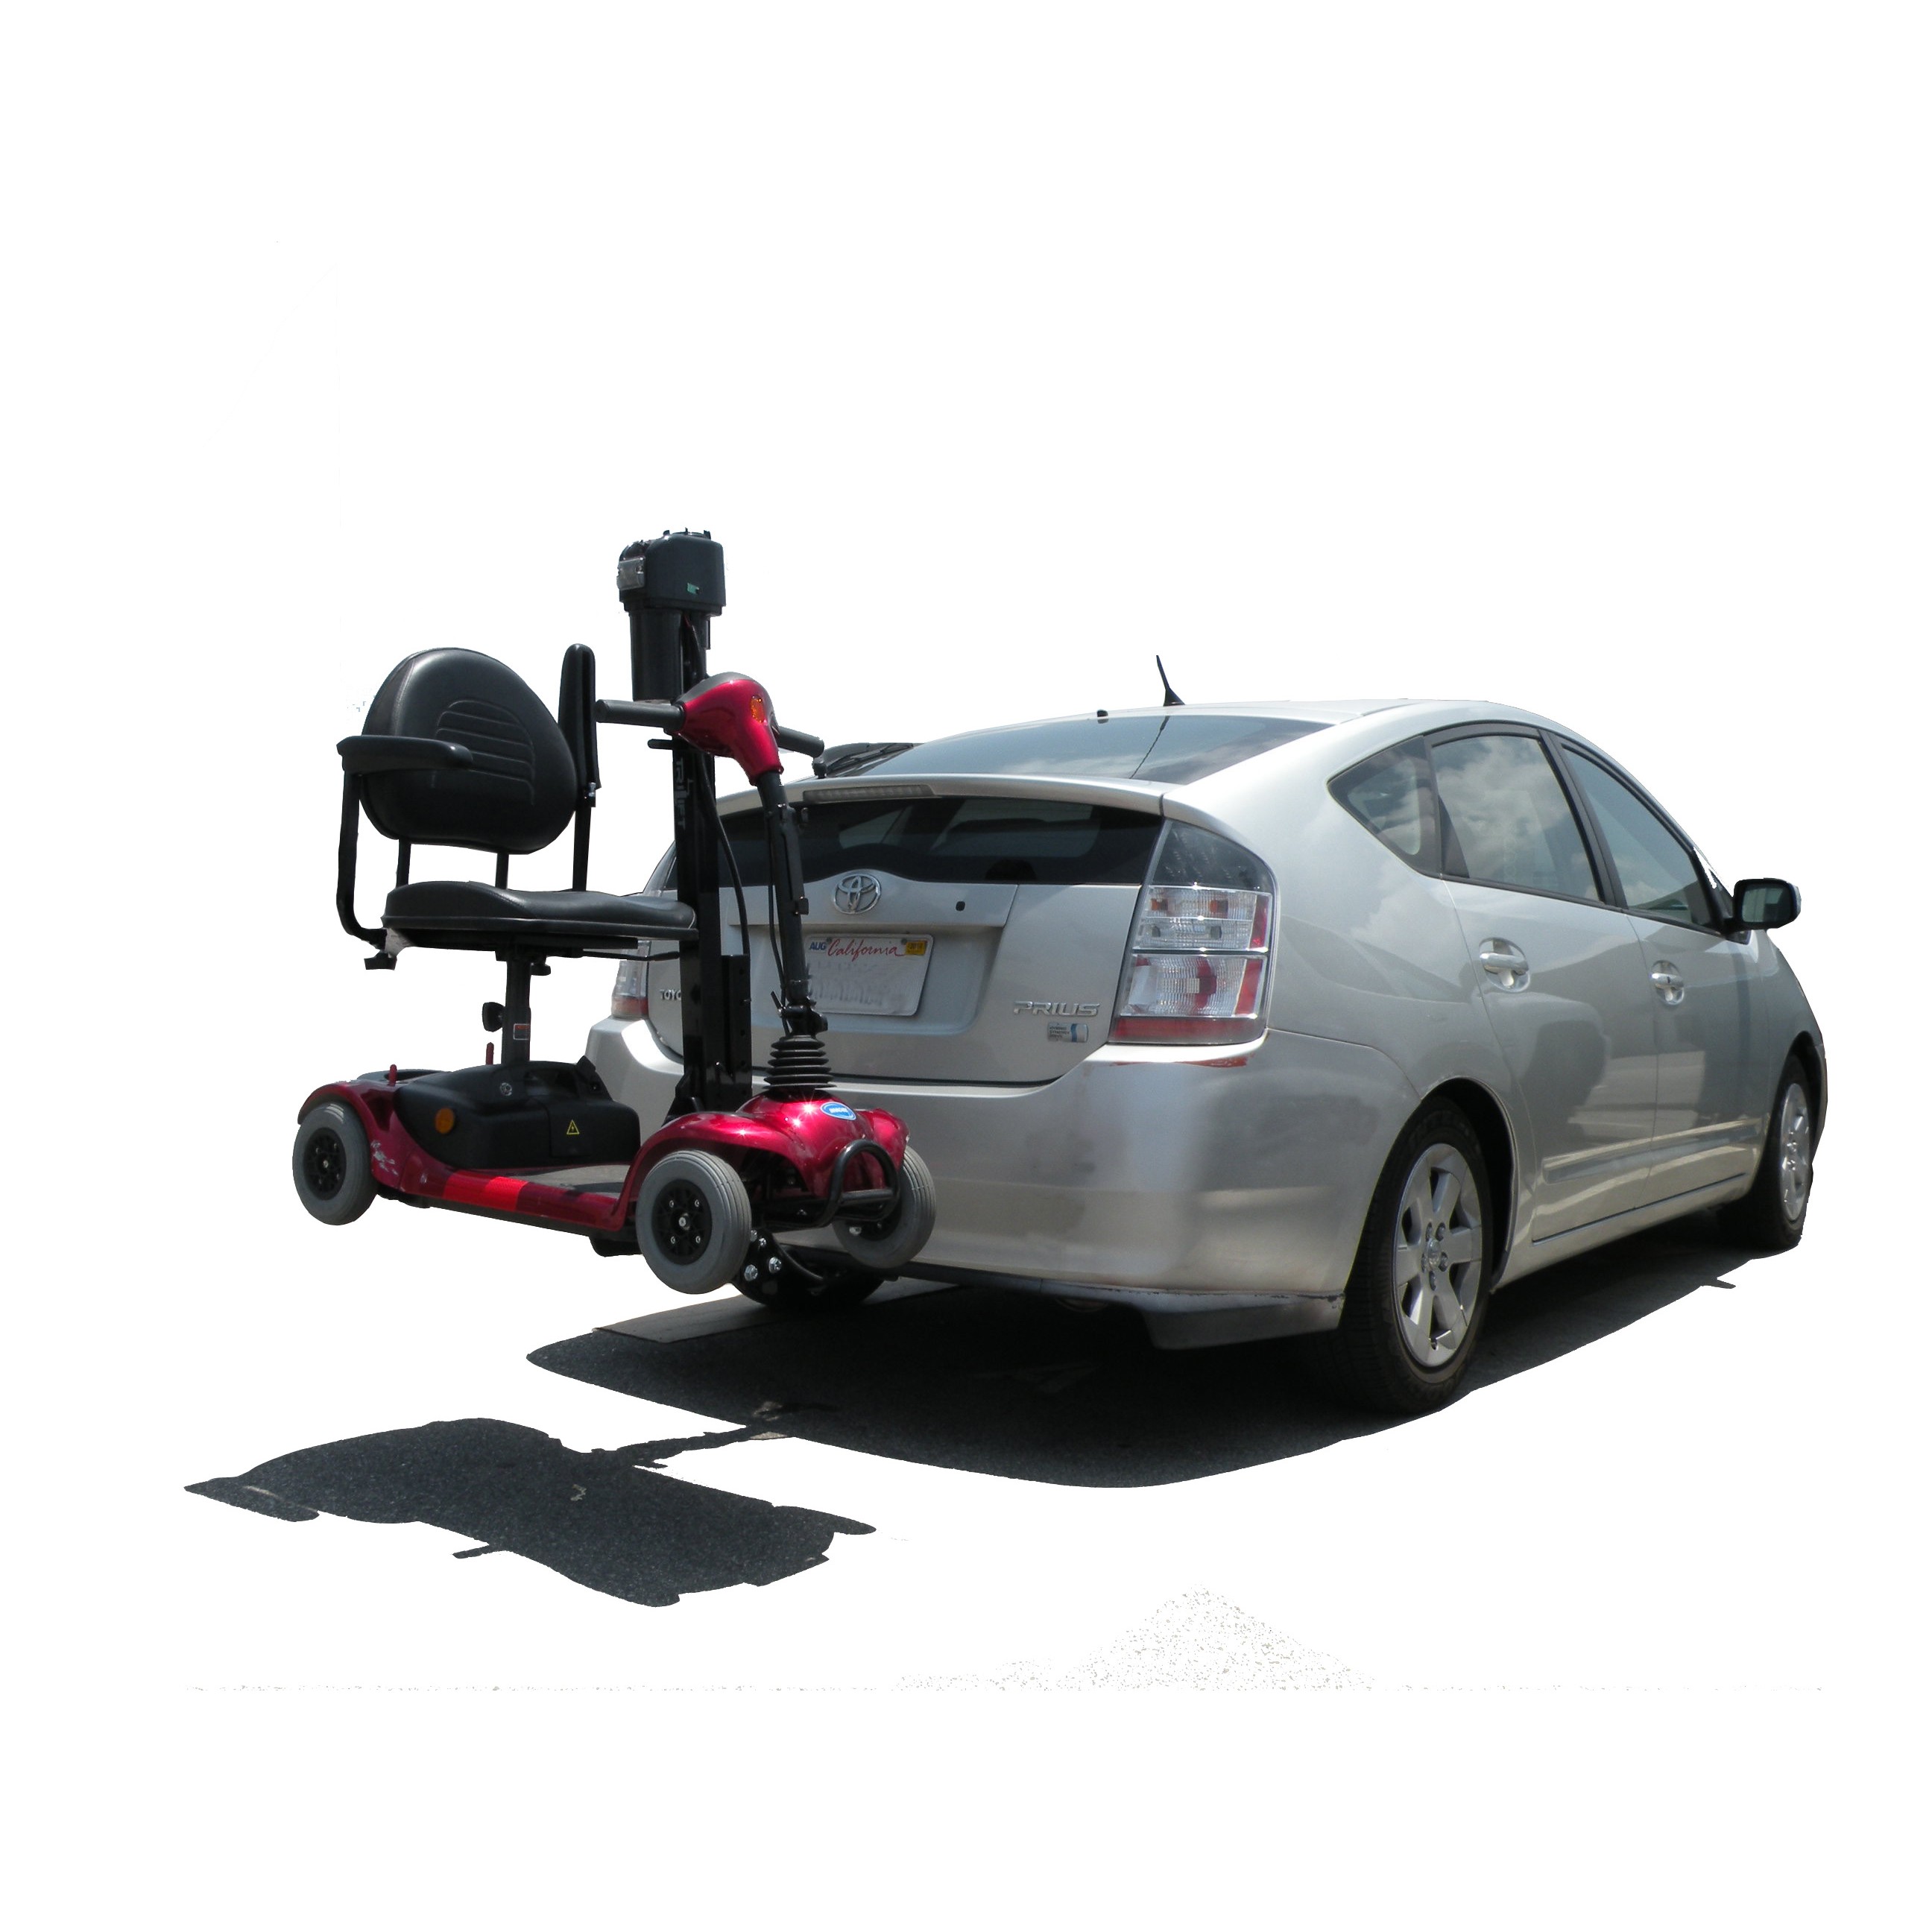 Manual wheelchair lift for car